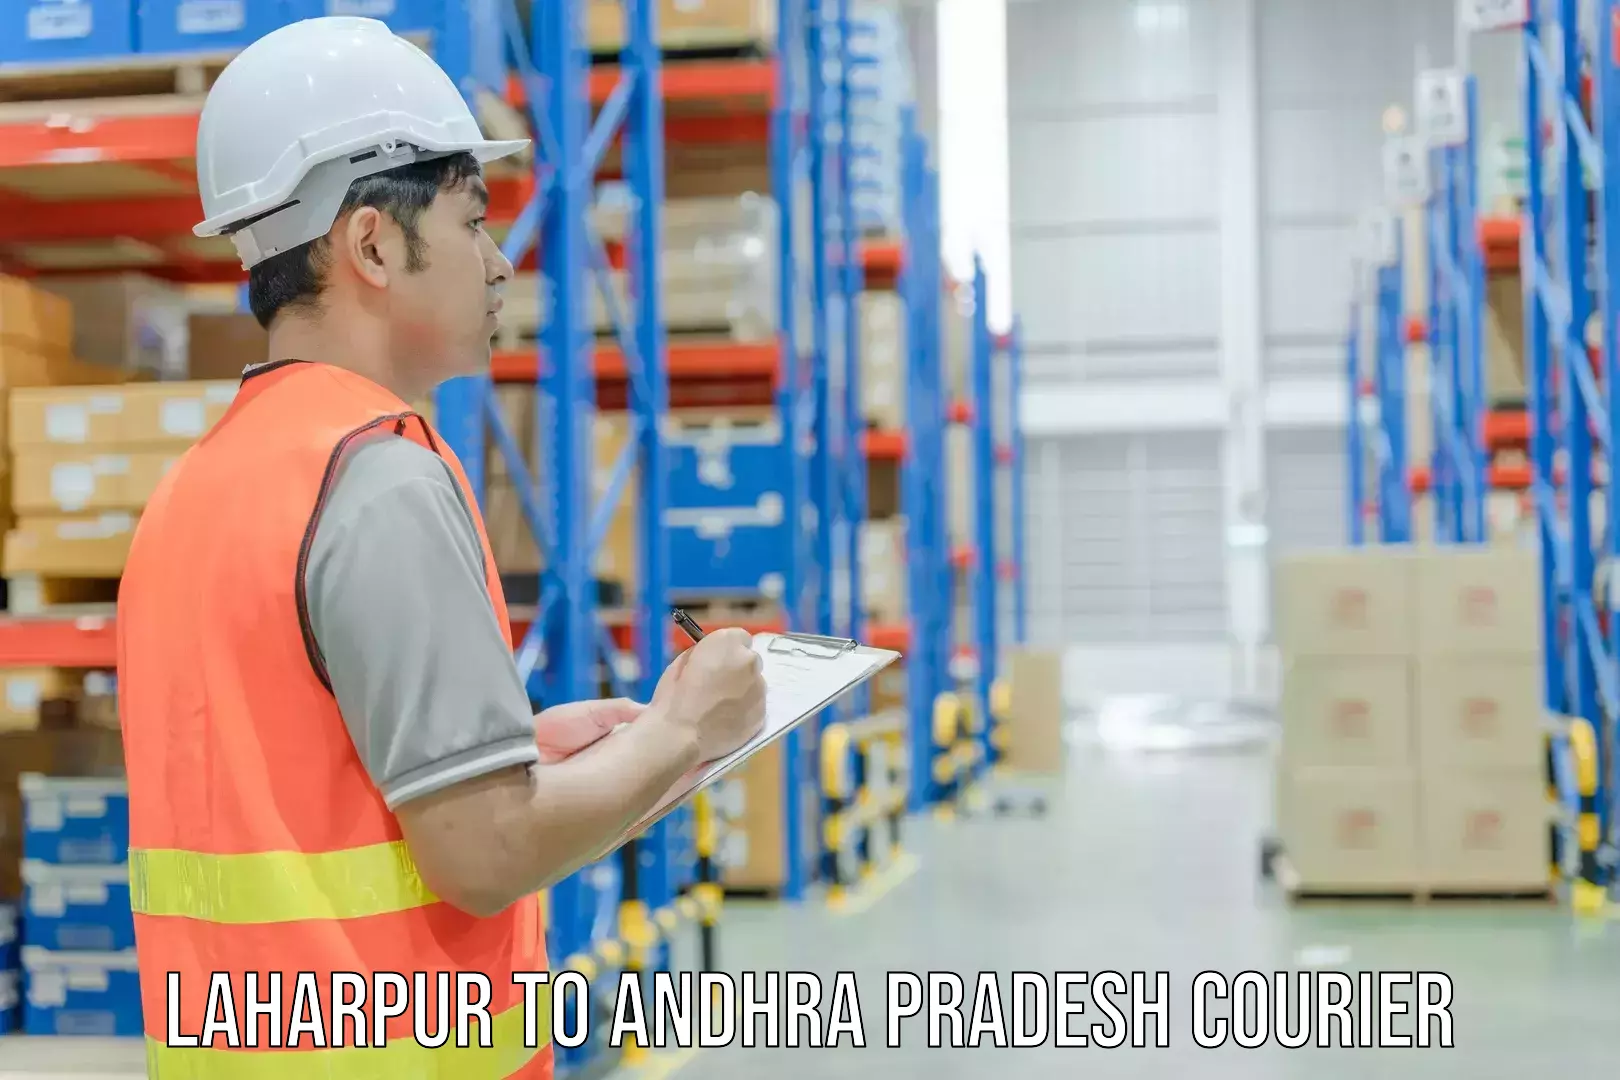 Professional courier handling Laharpur to Bheemunipatnam